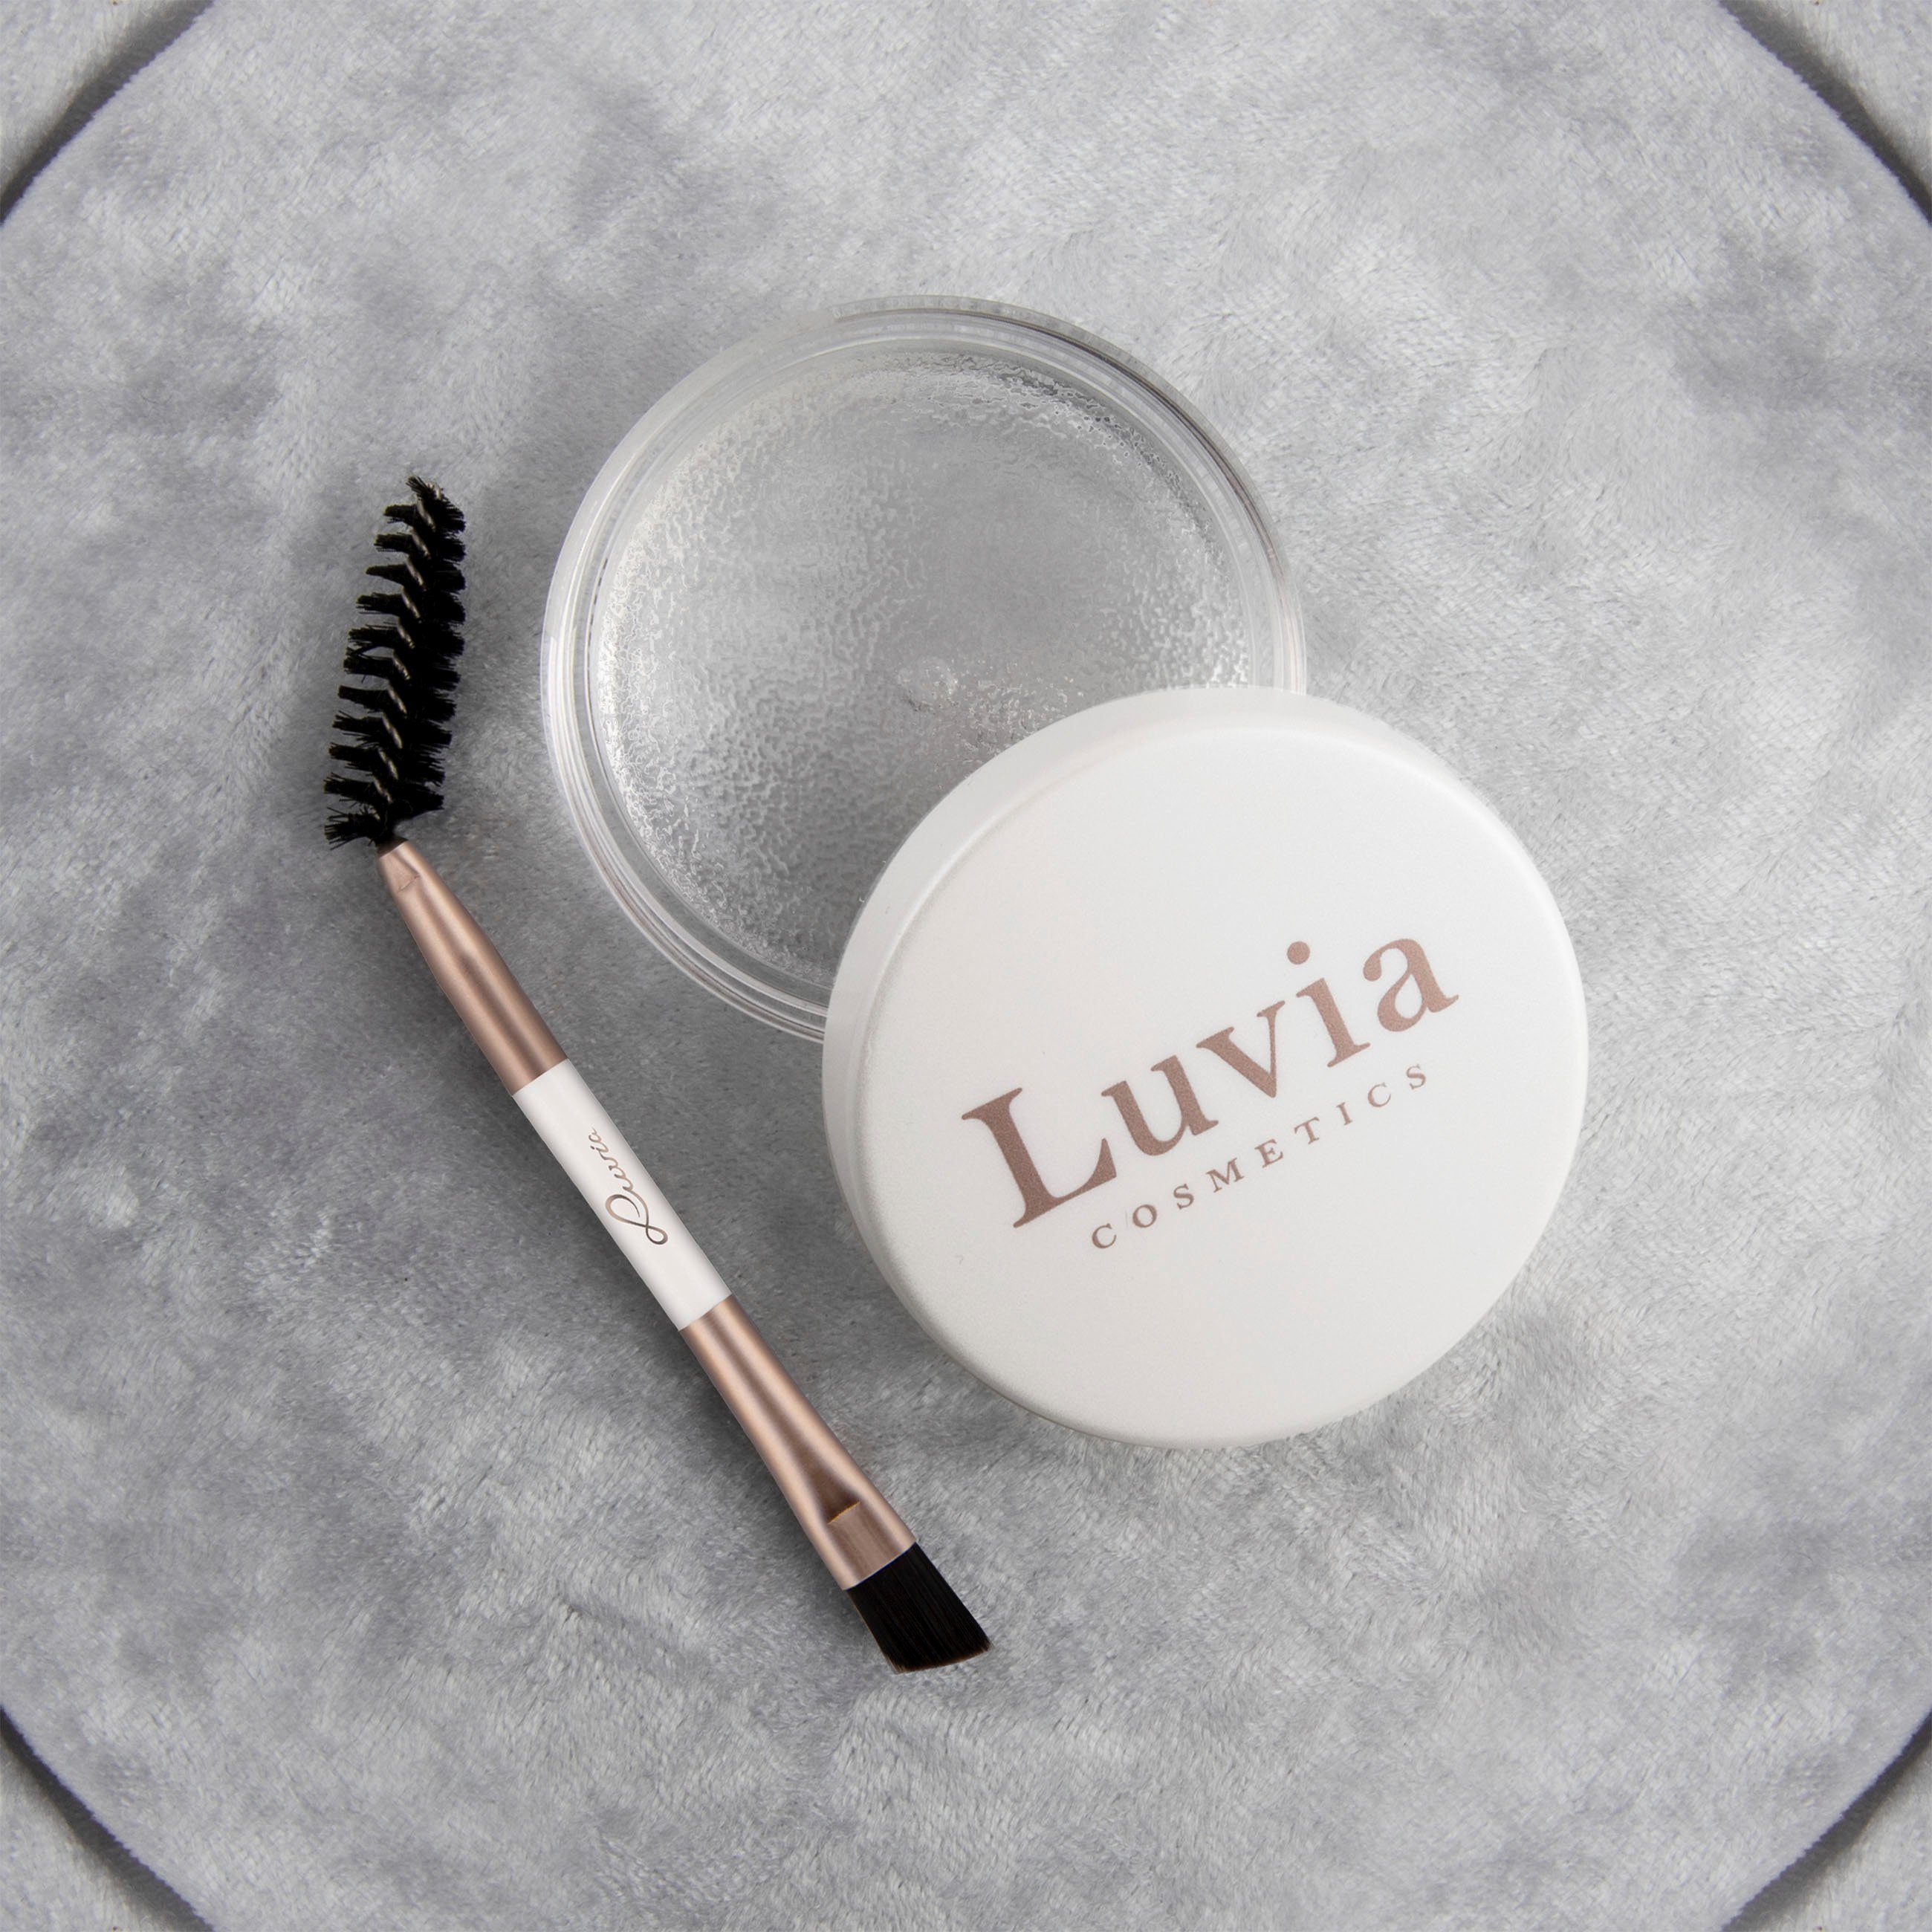 Styling Cosmetics Gel Brow Luvia Lidschatten-Palette